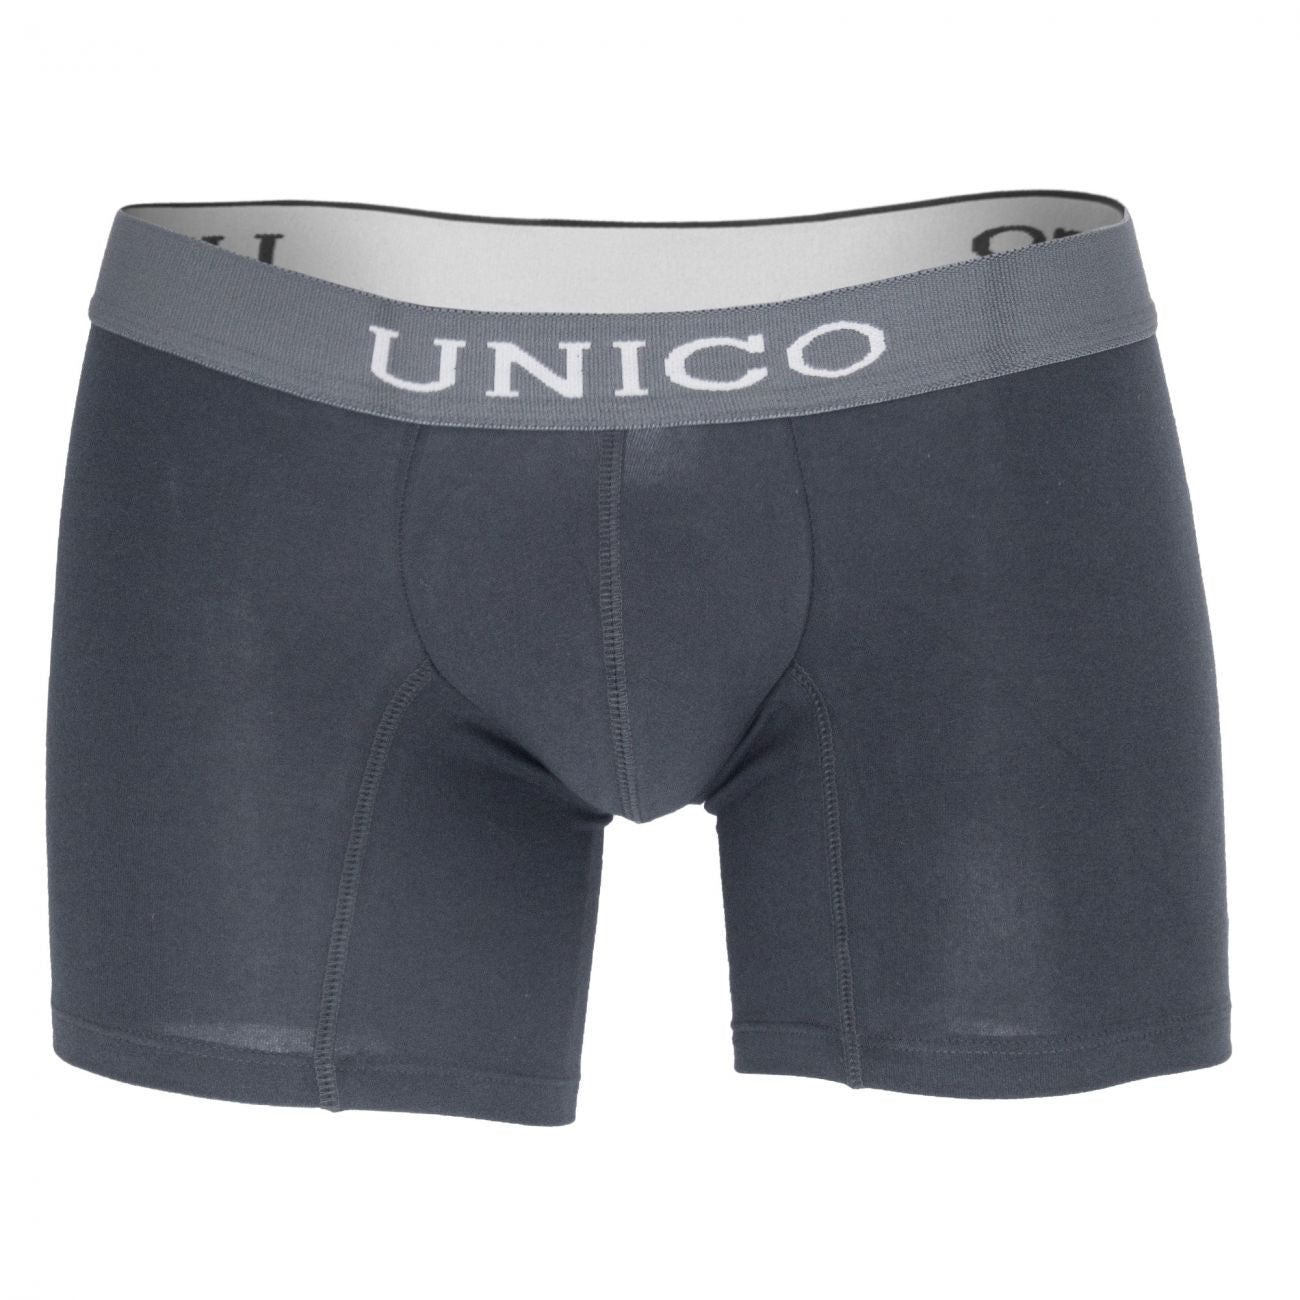 Unico 1200090196 Boxer Briefs Asfalto Gray